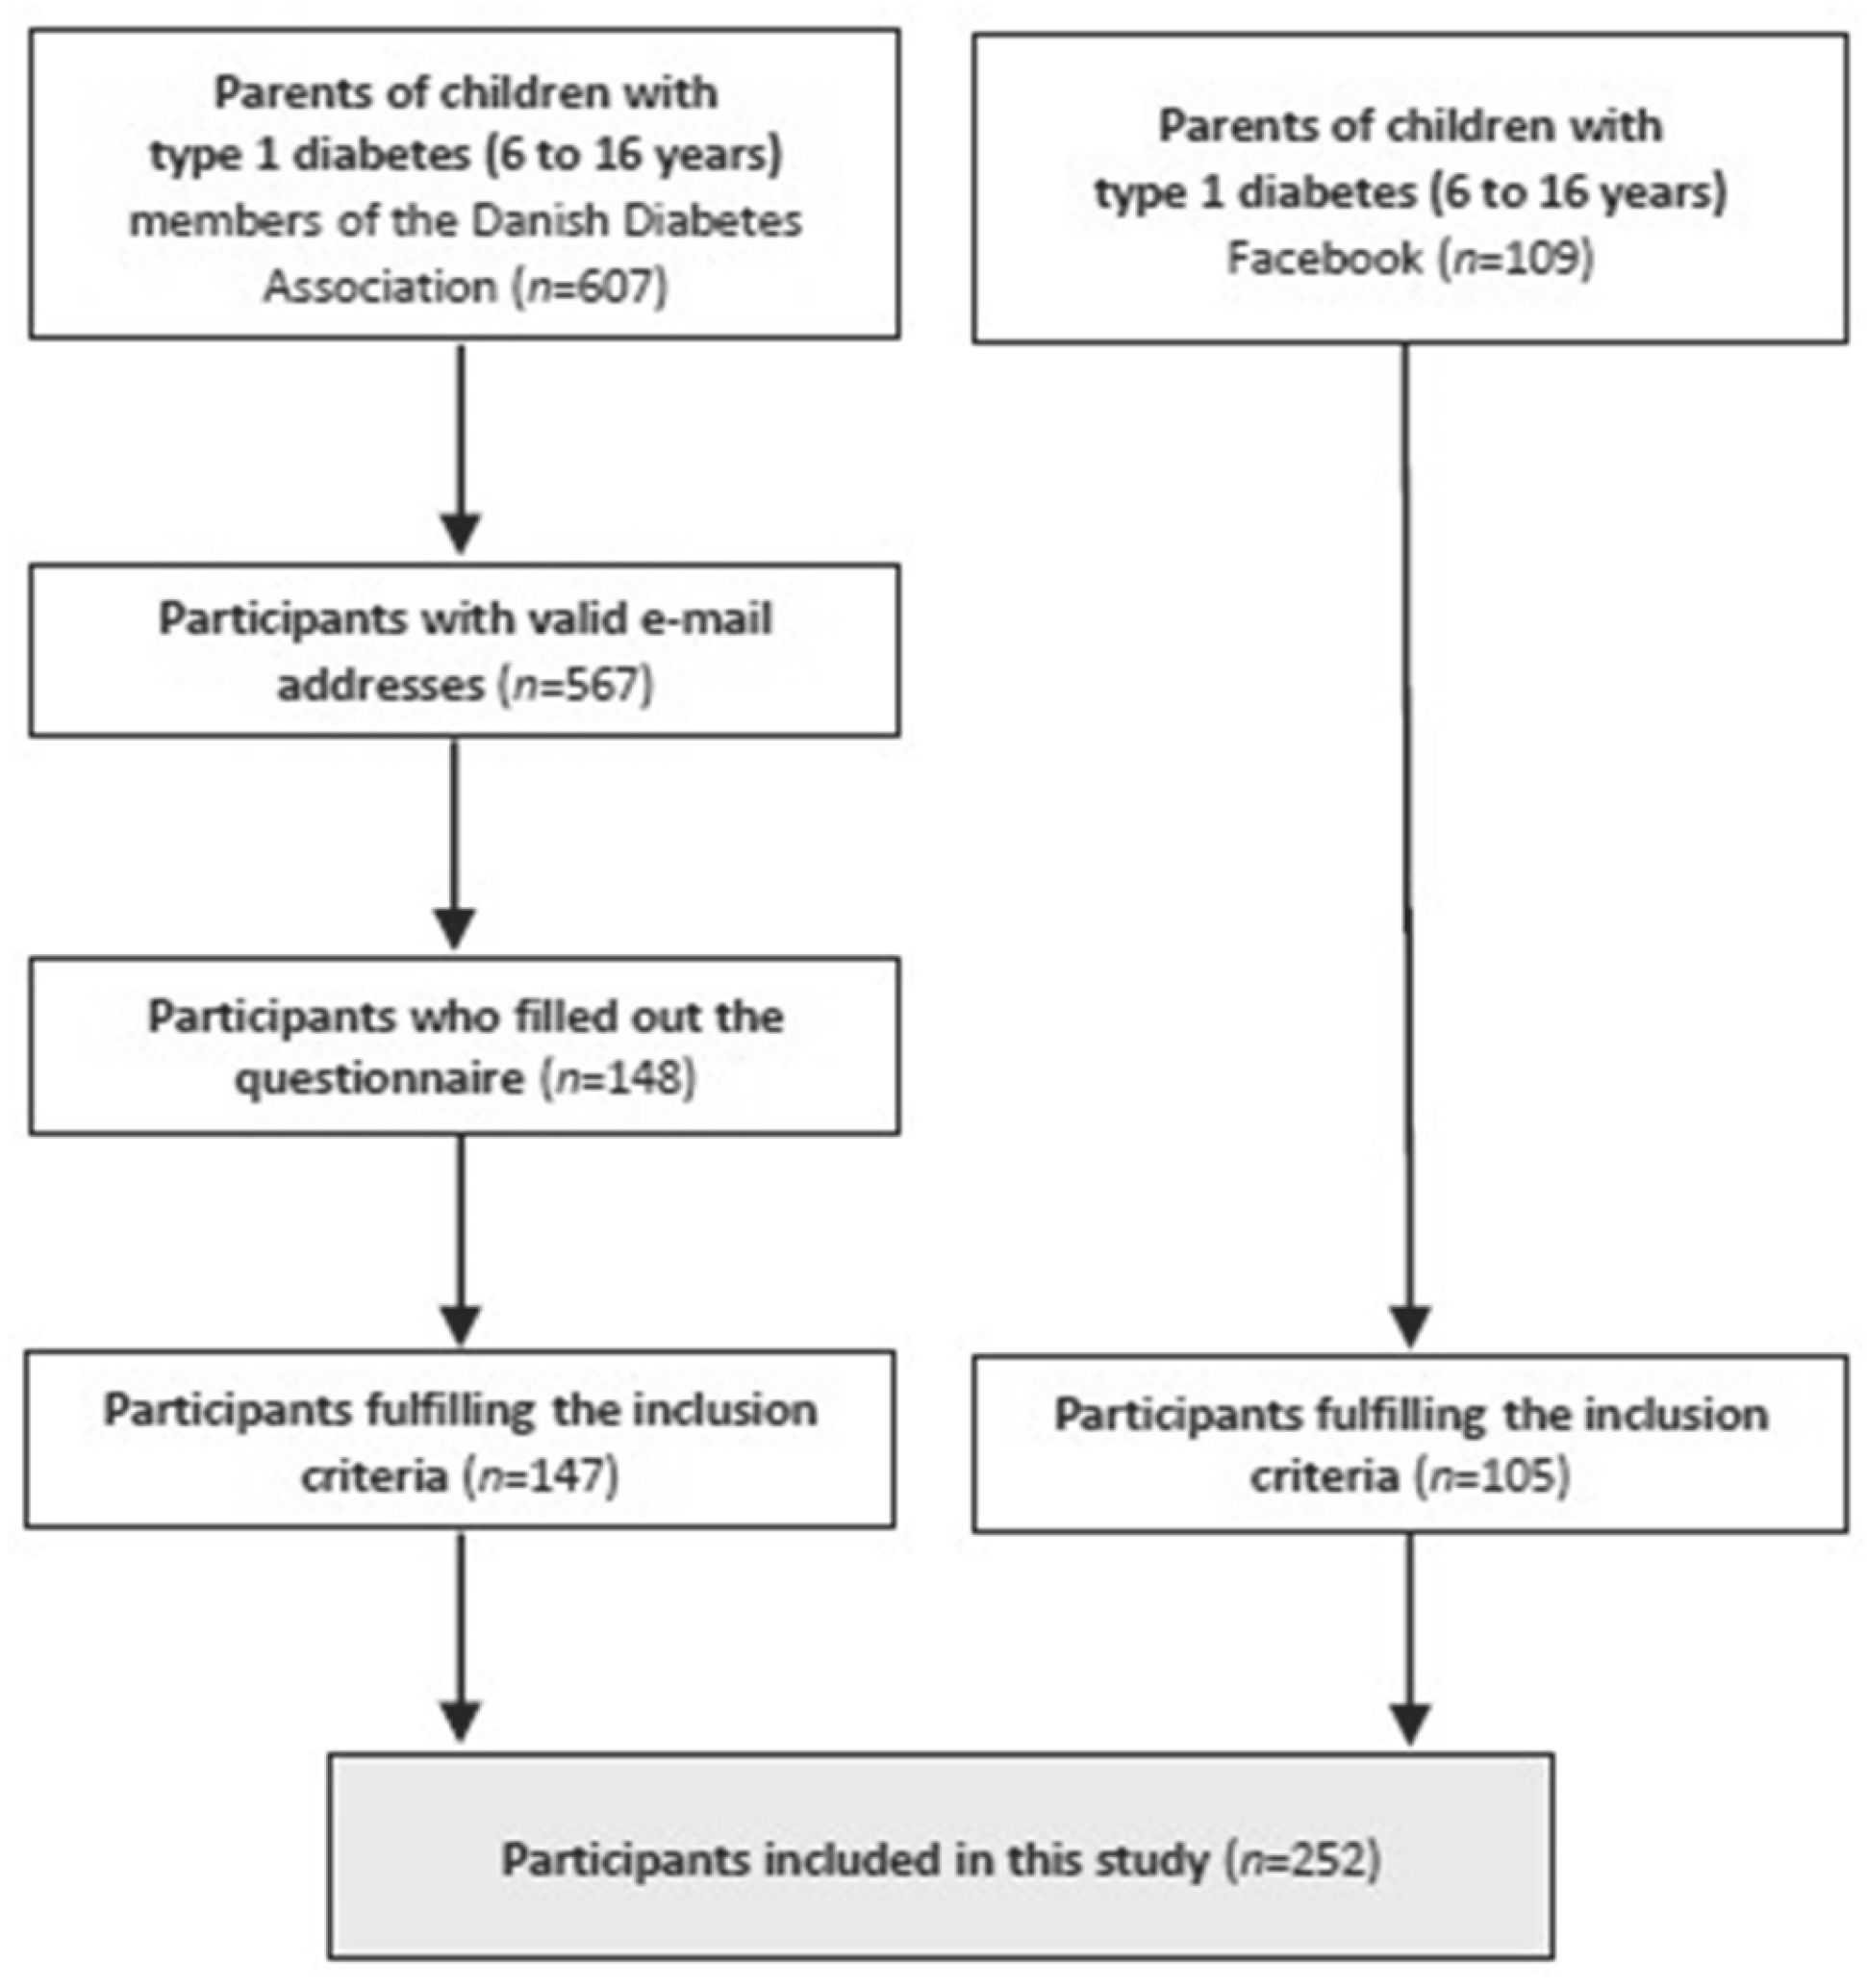 hesi case study diabetes type 1 pediatric